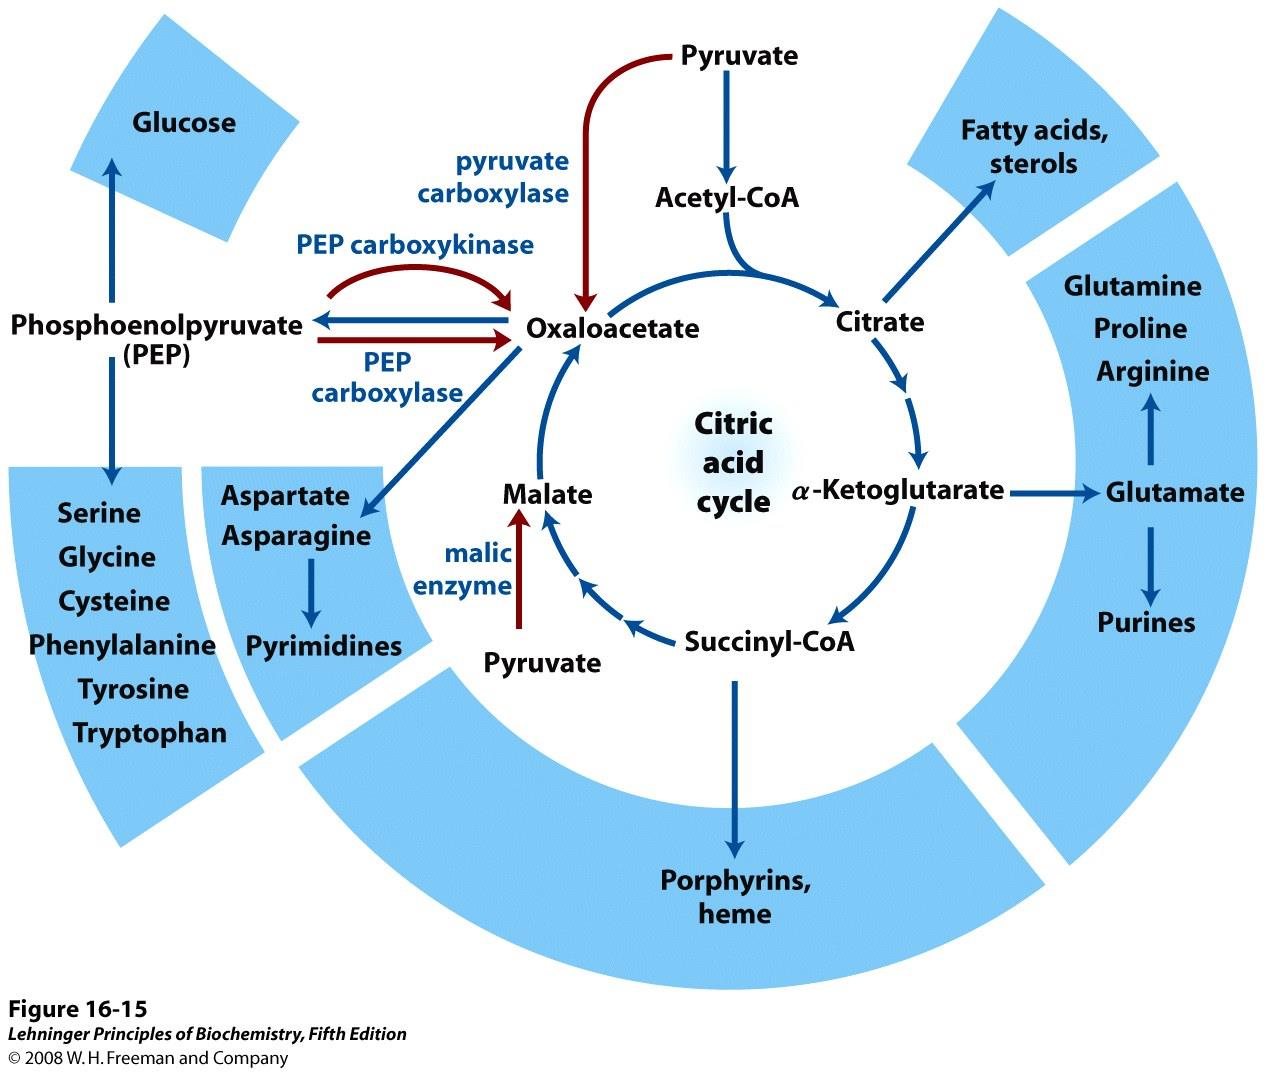 45 Mellomprodukter i sitronsyresyklus brukes som utgangspunkt for mange syntesereaksjoner.